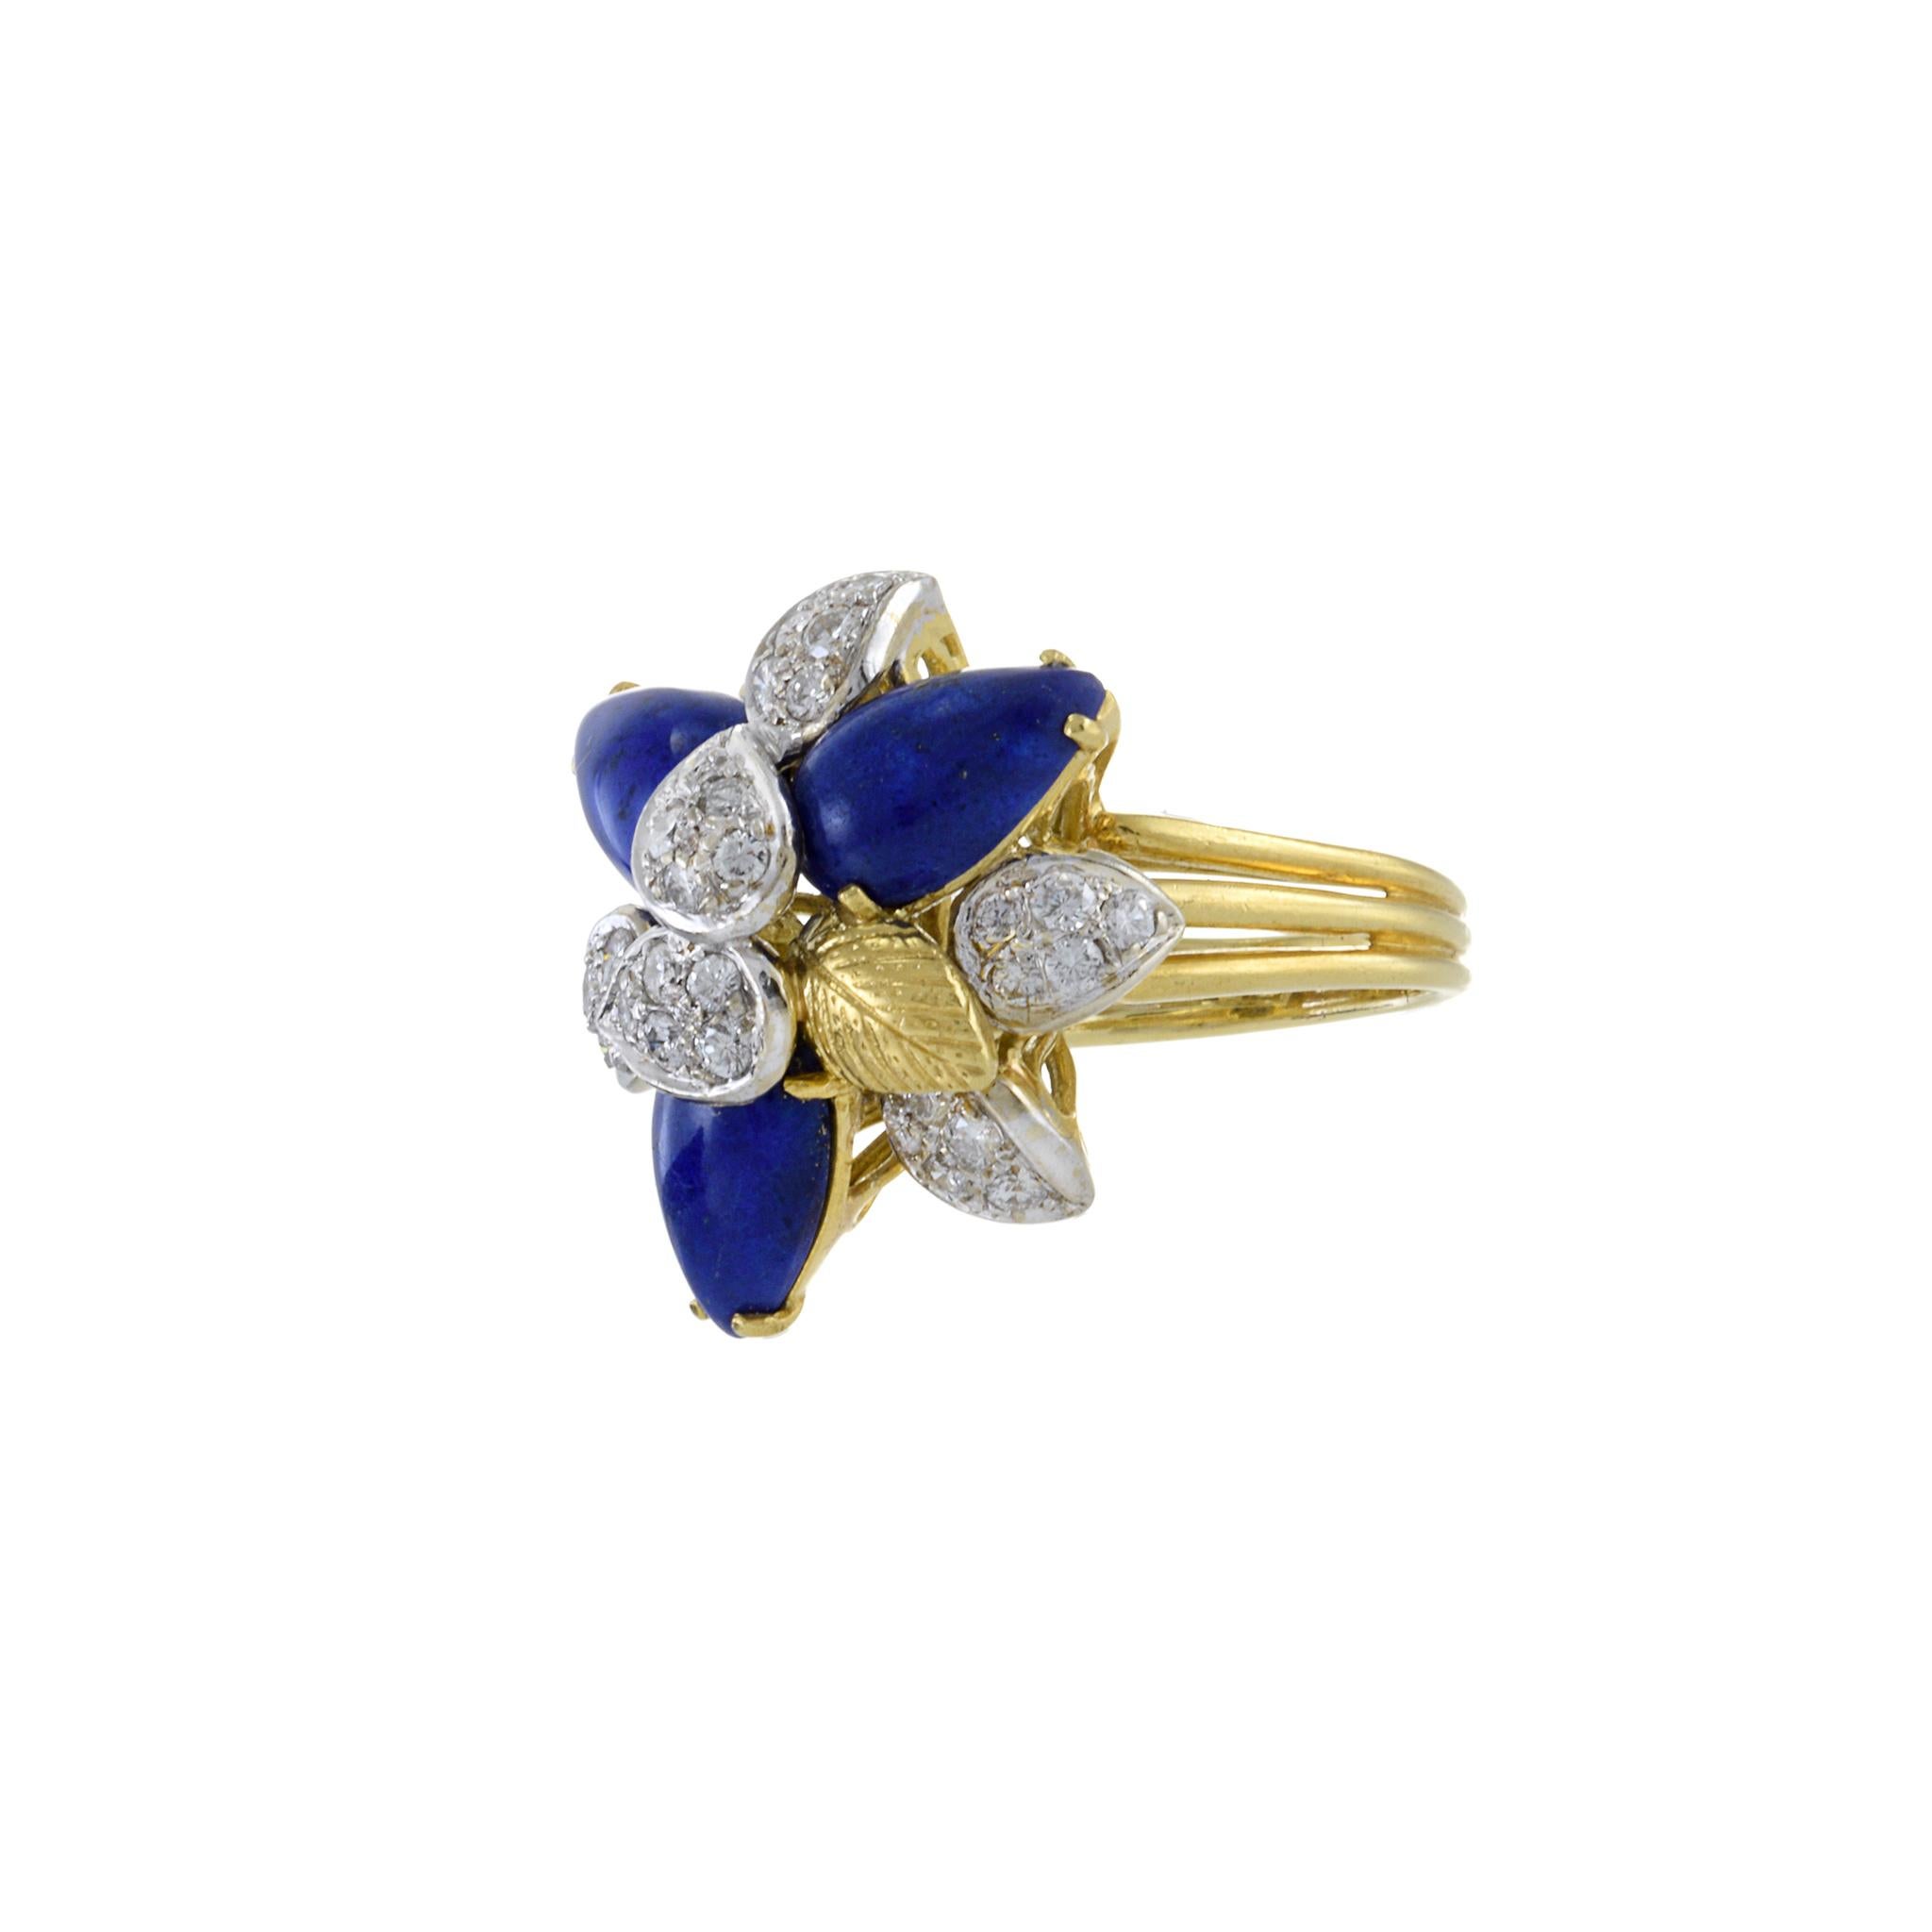 Der Estate Retro Era 18KT Yellow Gold Lapis Lazuli and Diamond Flower Ring ist eine schillernde Verkörperung von Vintage-Charme und Eleganz. Dieses exquisite Schmuckstück vereint das tiefe, himmlische Blau von Lapislazuli-Edelsteinen mit dem